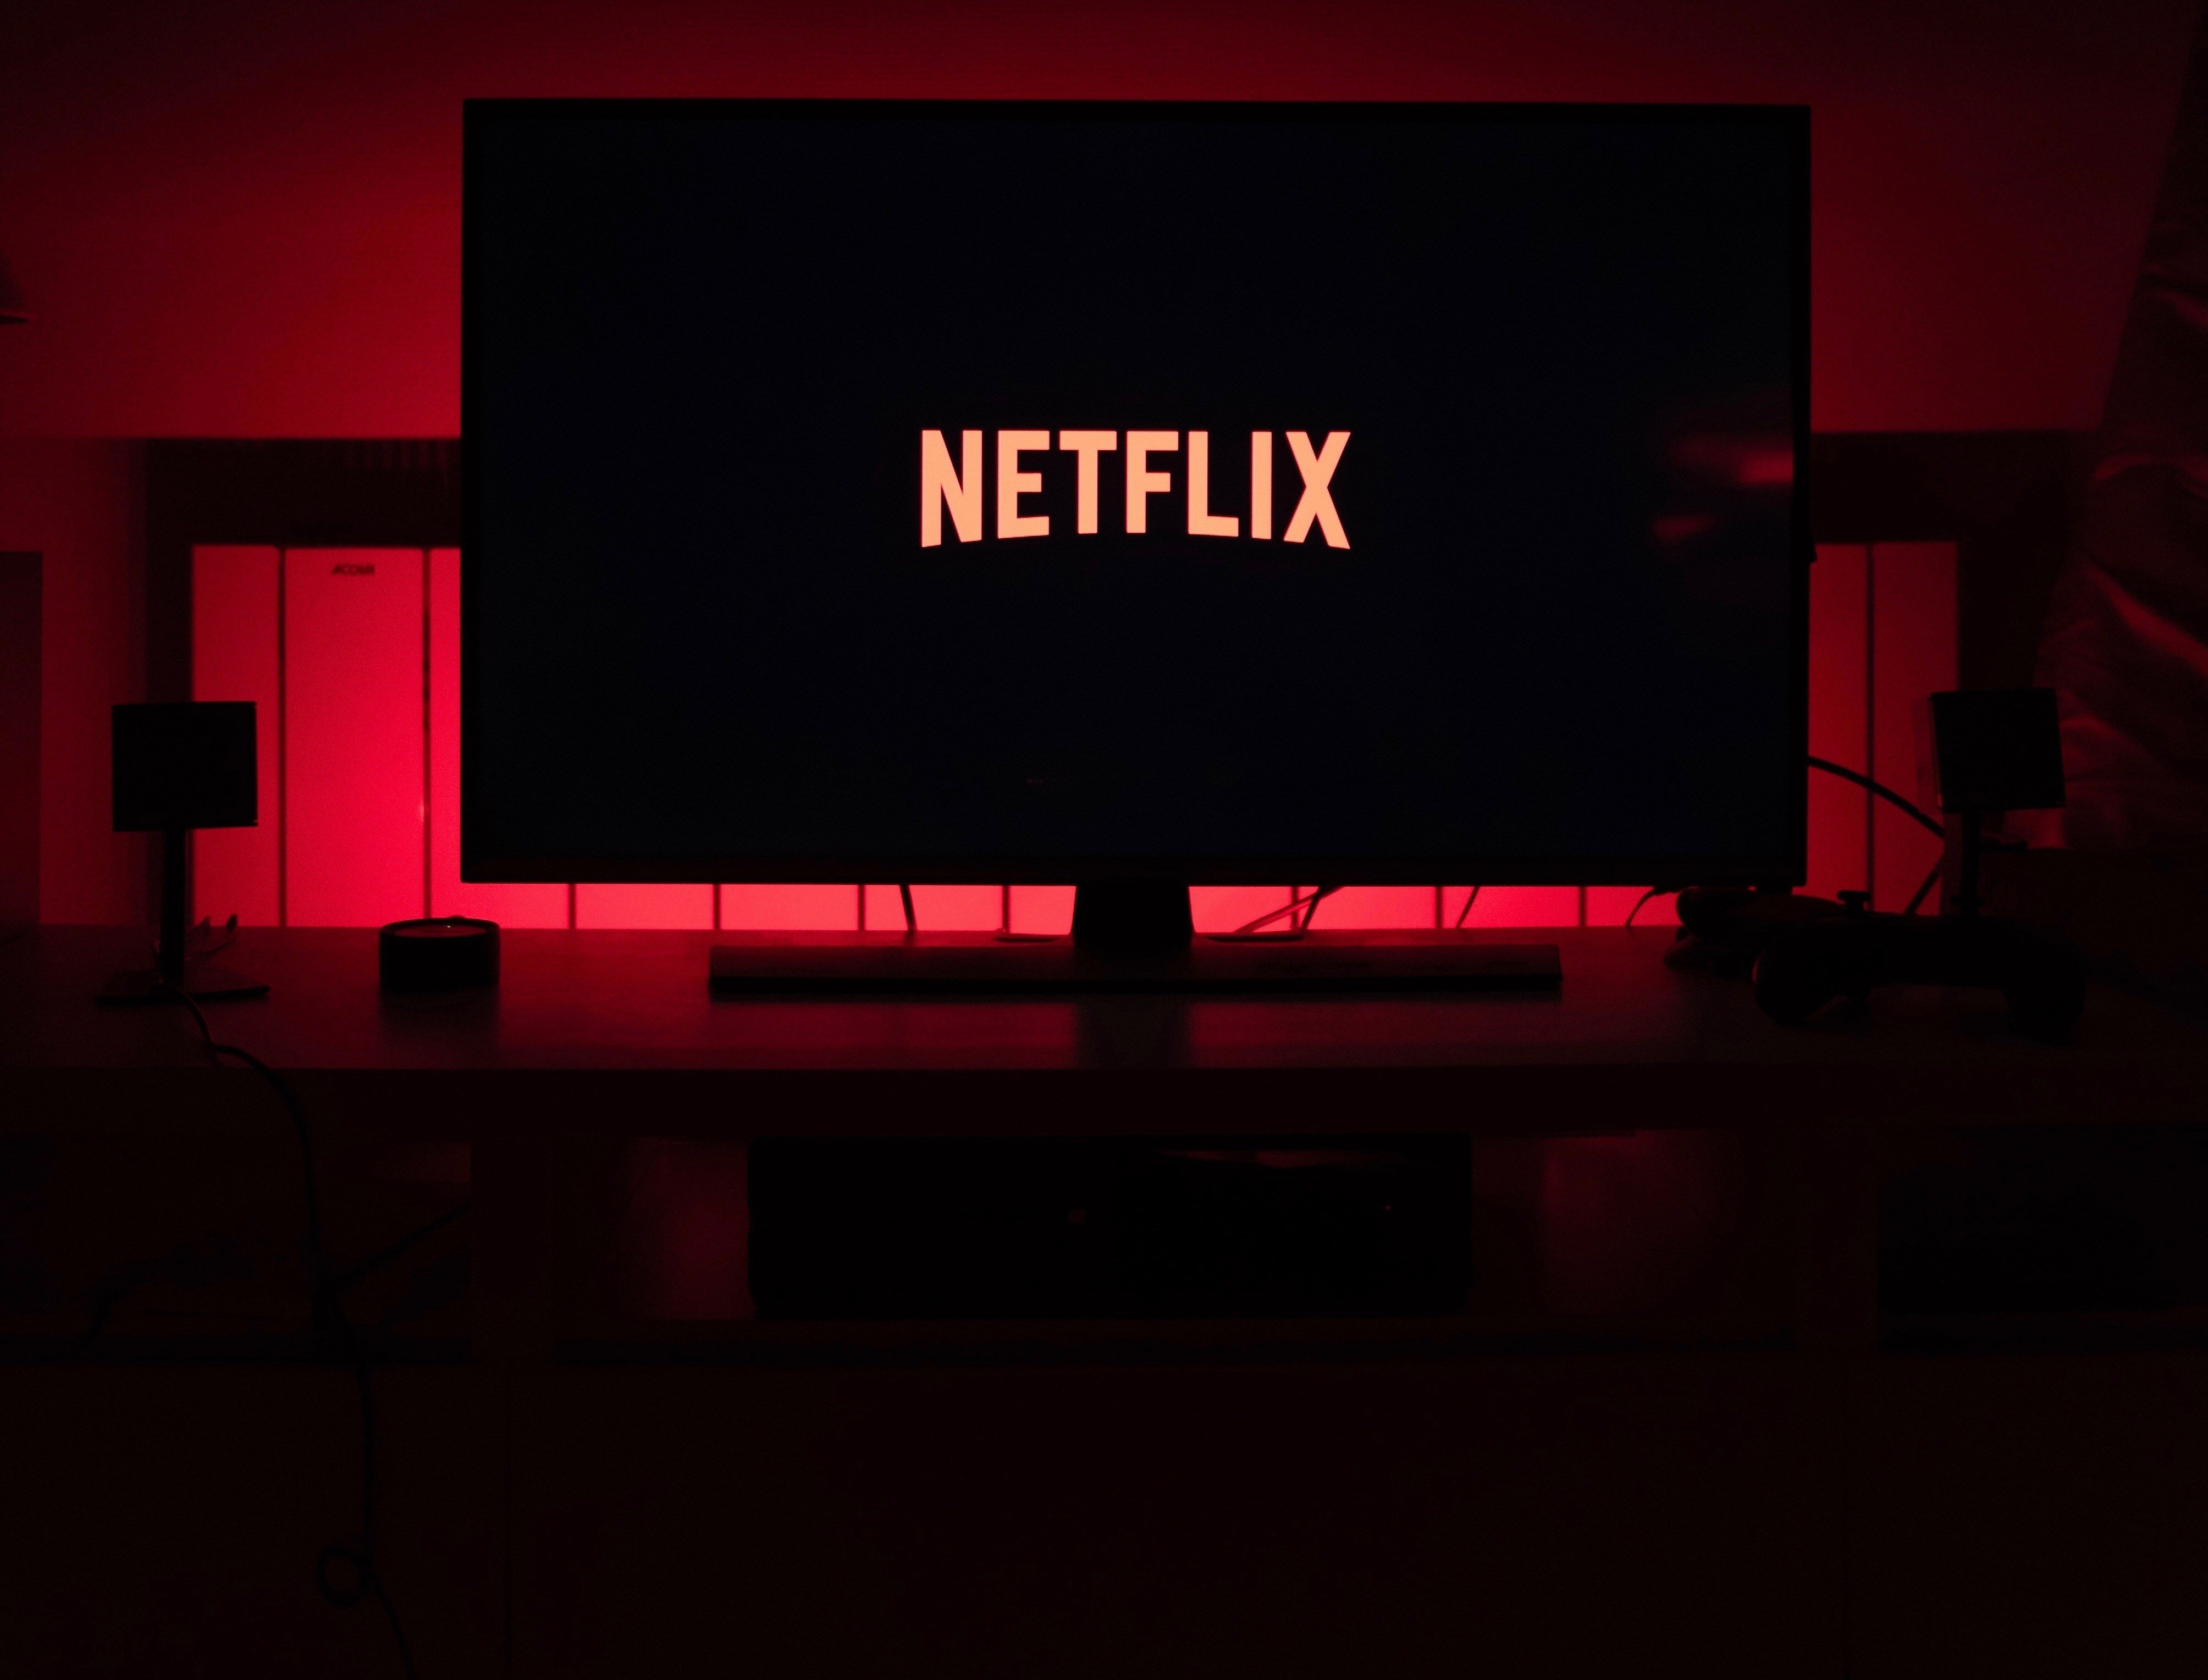 Netflix red